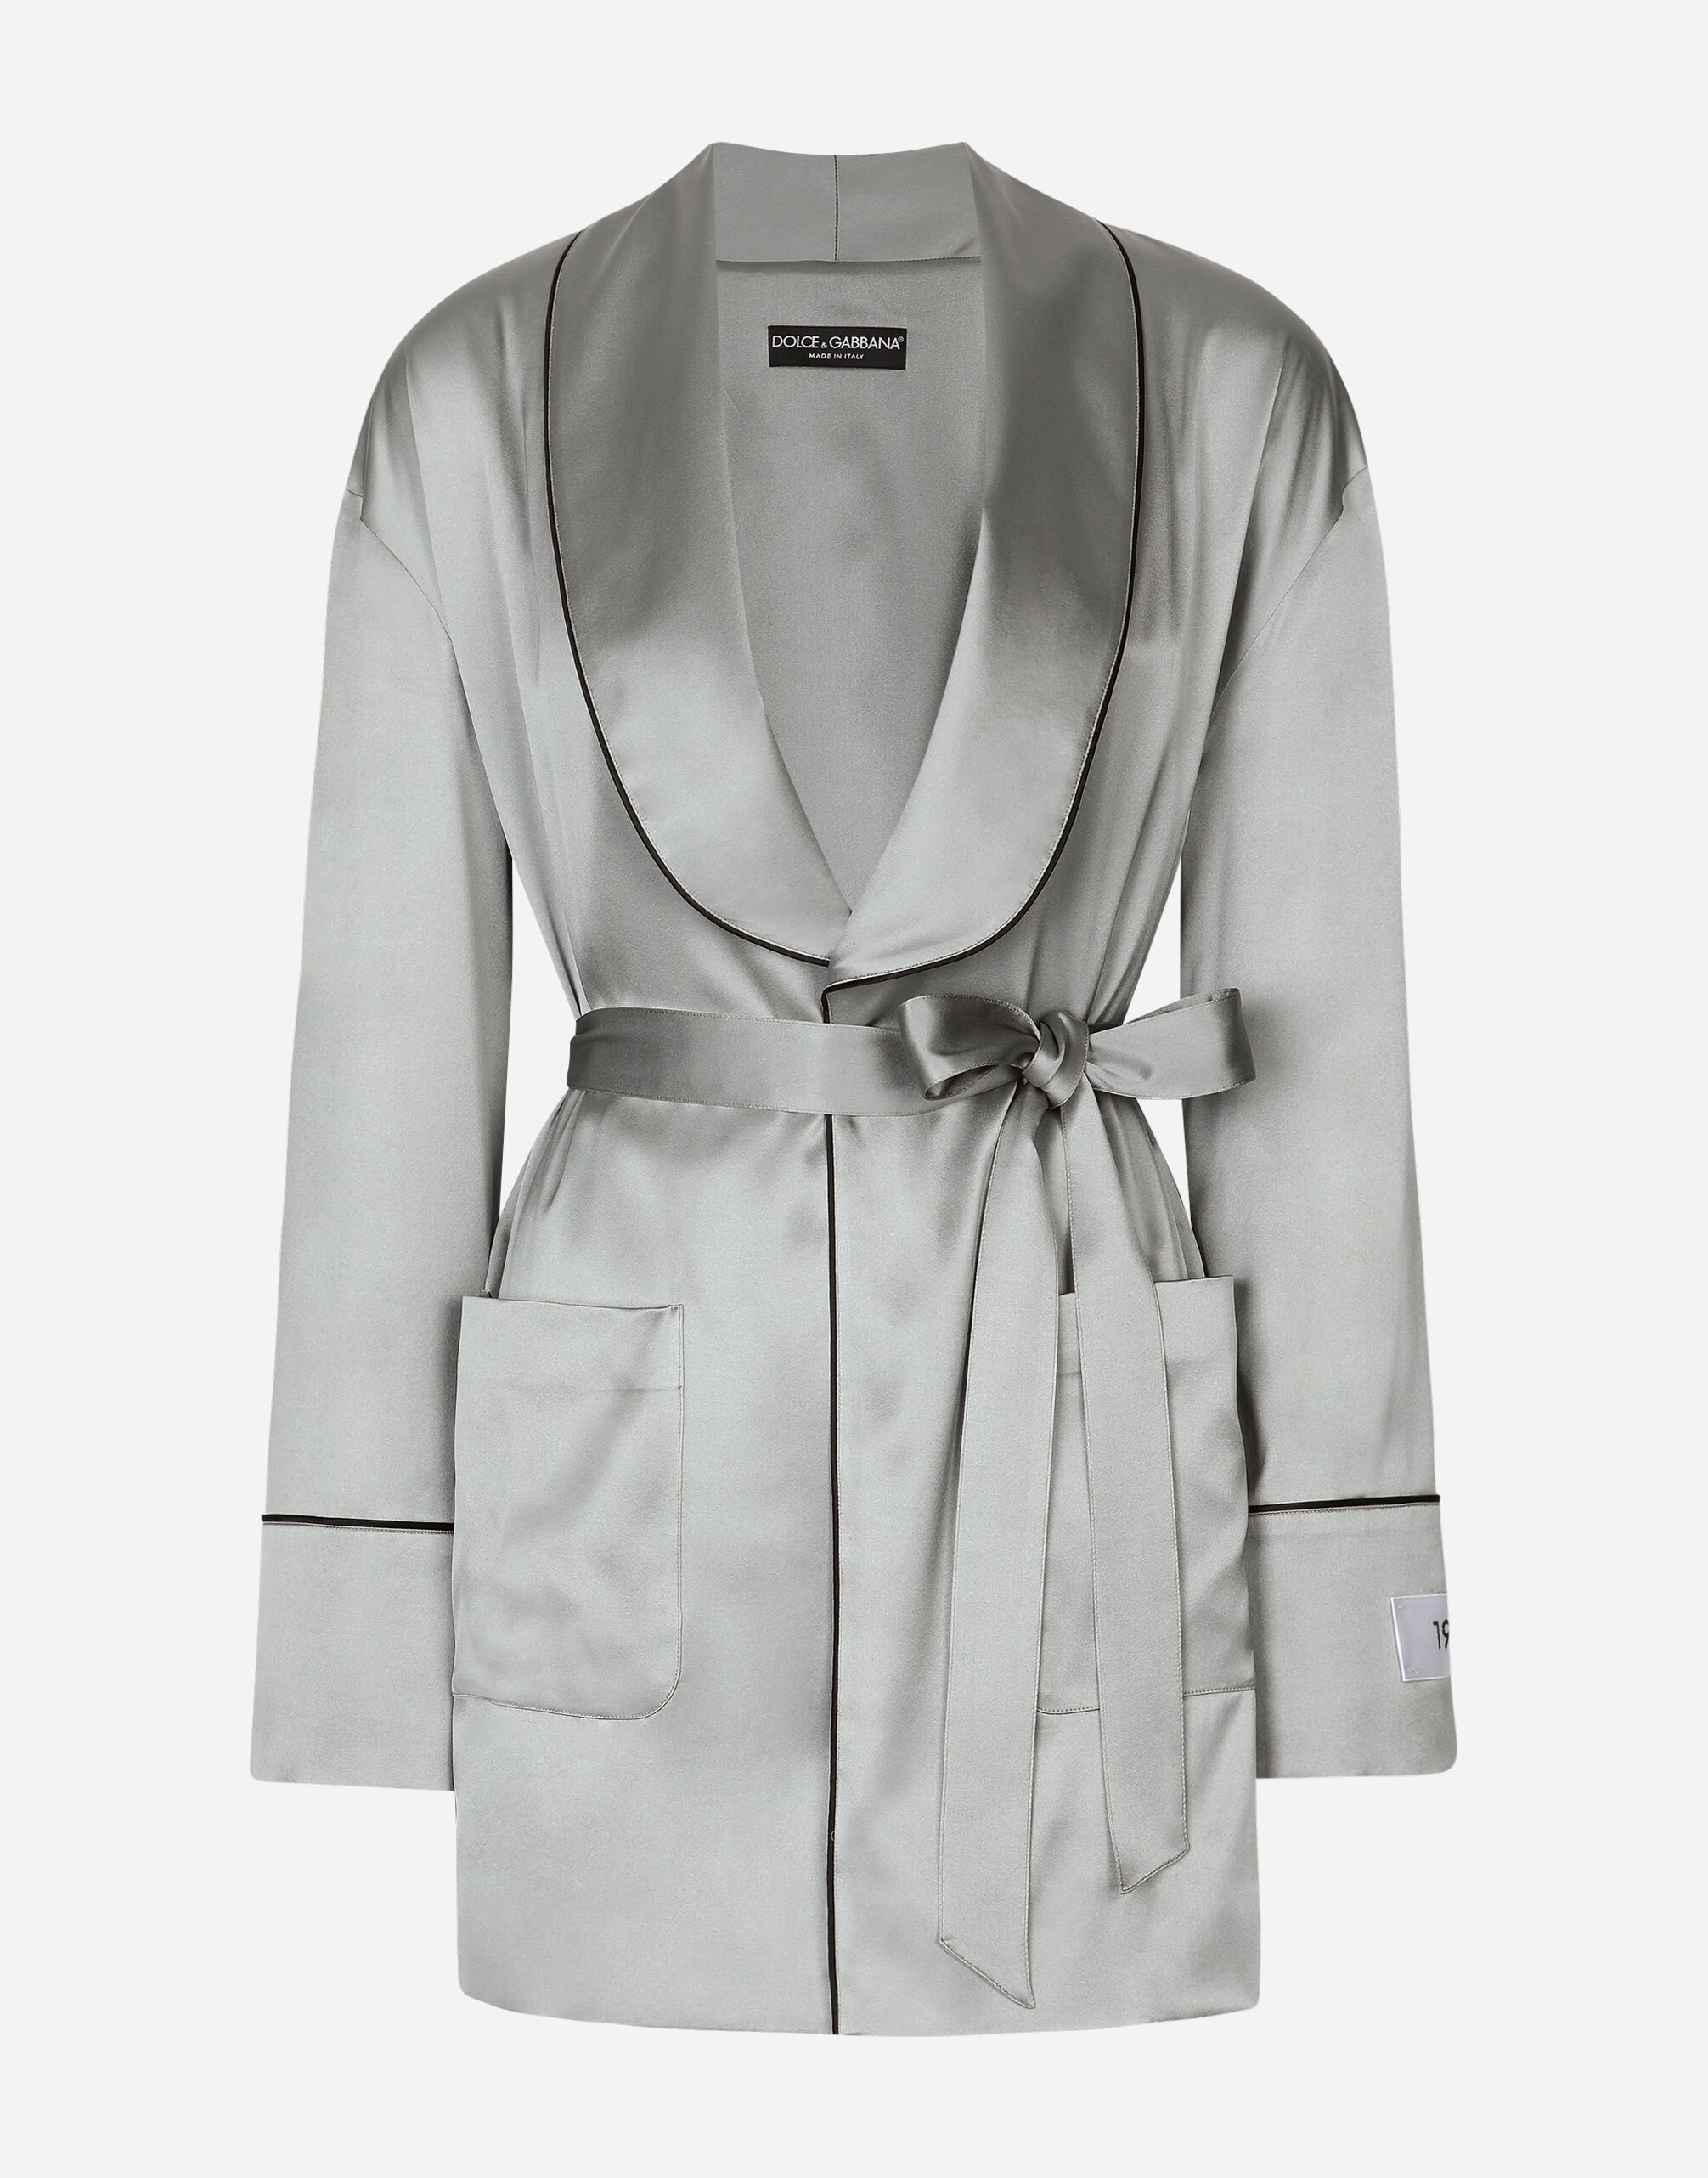 Dolce & Gabbana KIM DOLCE&GABBANA Satin pajama shirt with belt White CK1563B5845